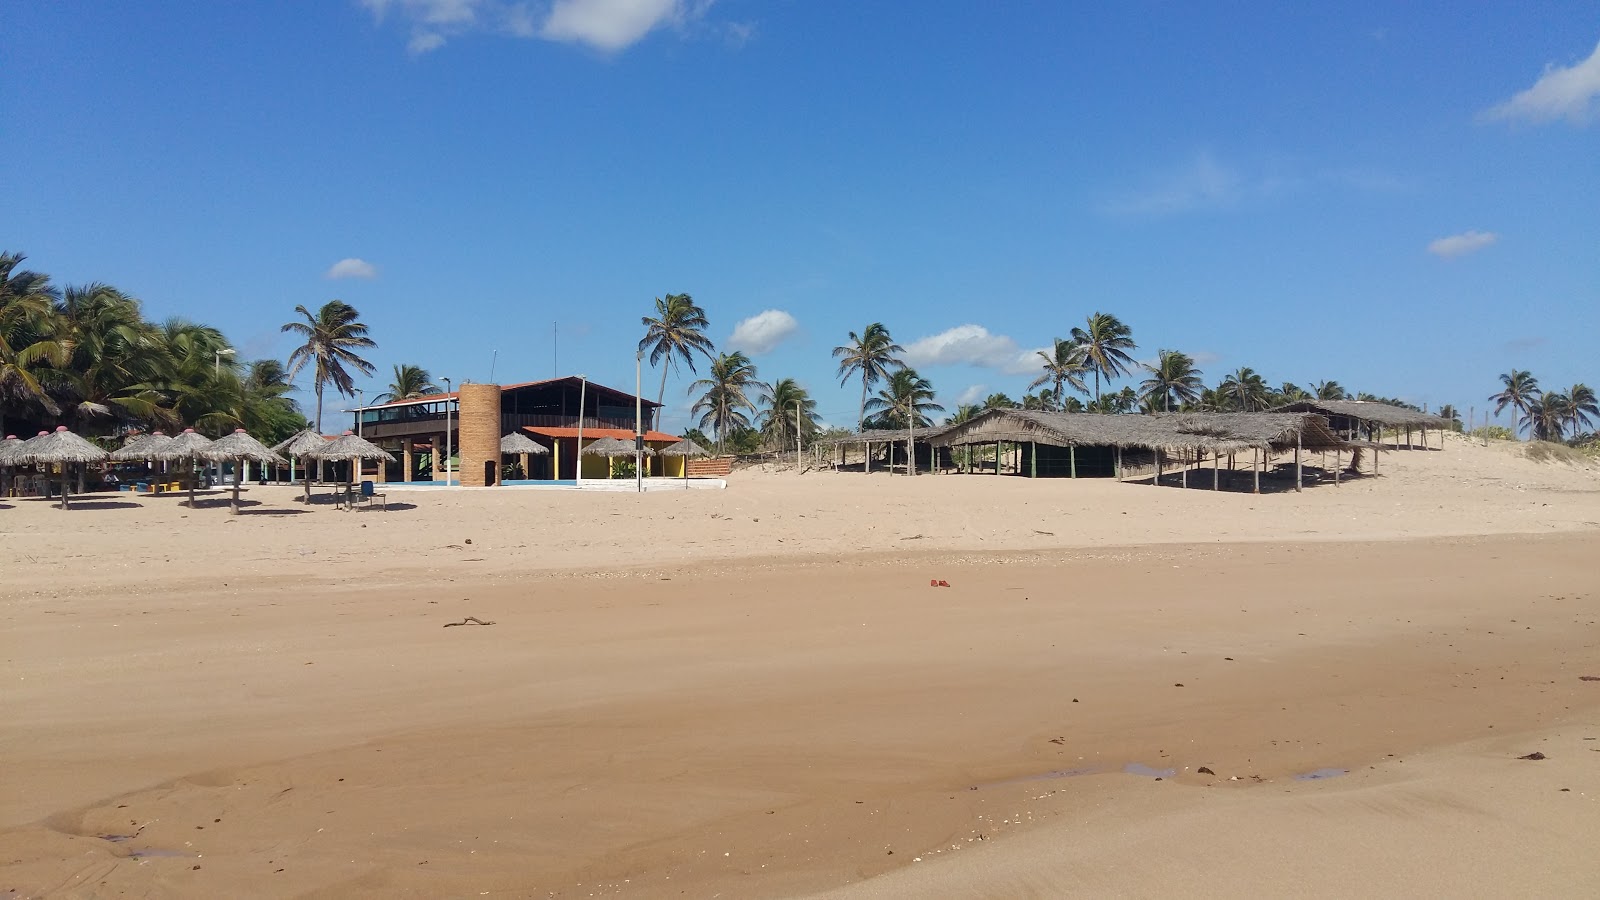 Praia de Almofala'in fotoğrafı geniş plaj ile birlikte